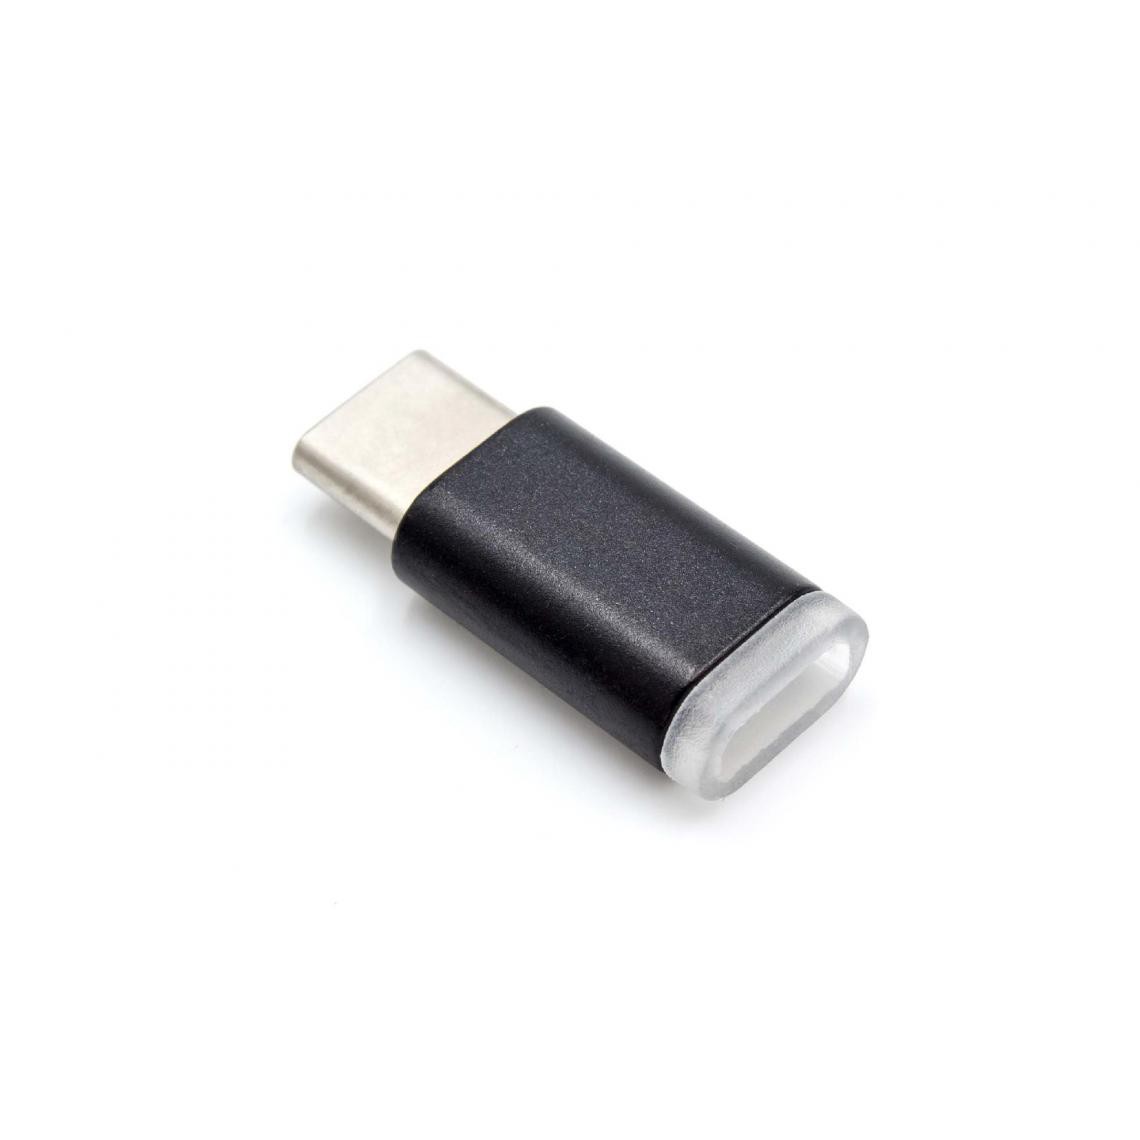 Vhbw - vhbw Adaptateur USB-C vers micro-USB compatible avec Apple Macbook 2015, Pro 2016, noir - Chargeur secteur téléphone